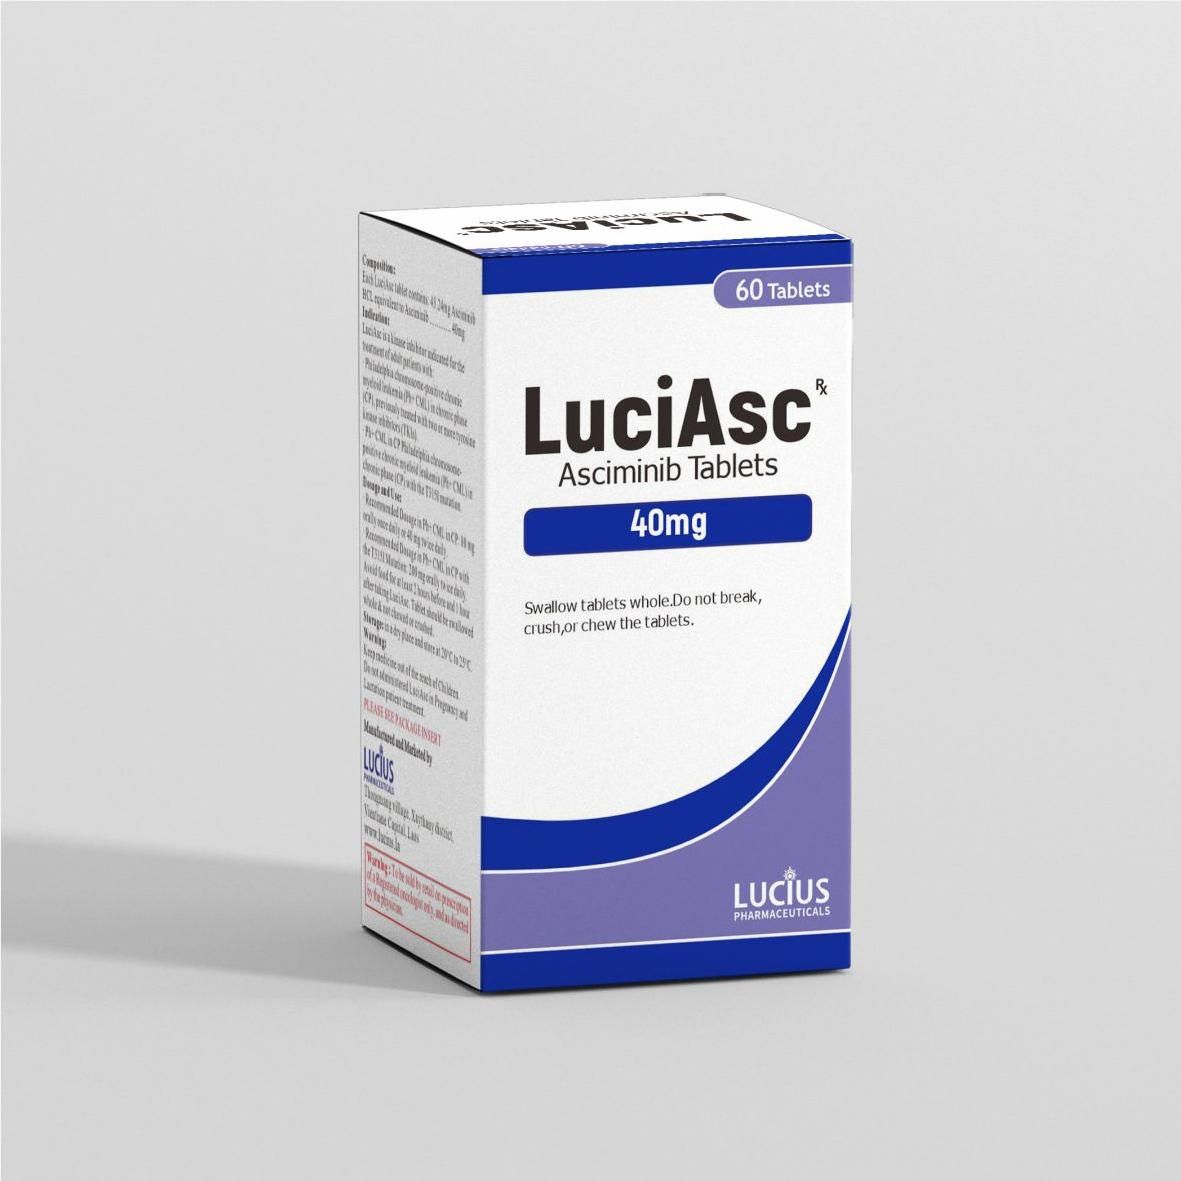 Thuốc LuciAsc Asciminib 40mg giá bao nhiêu mua ở đâu?